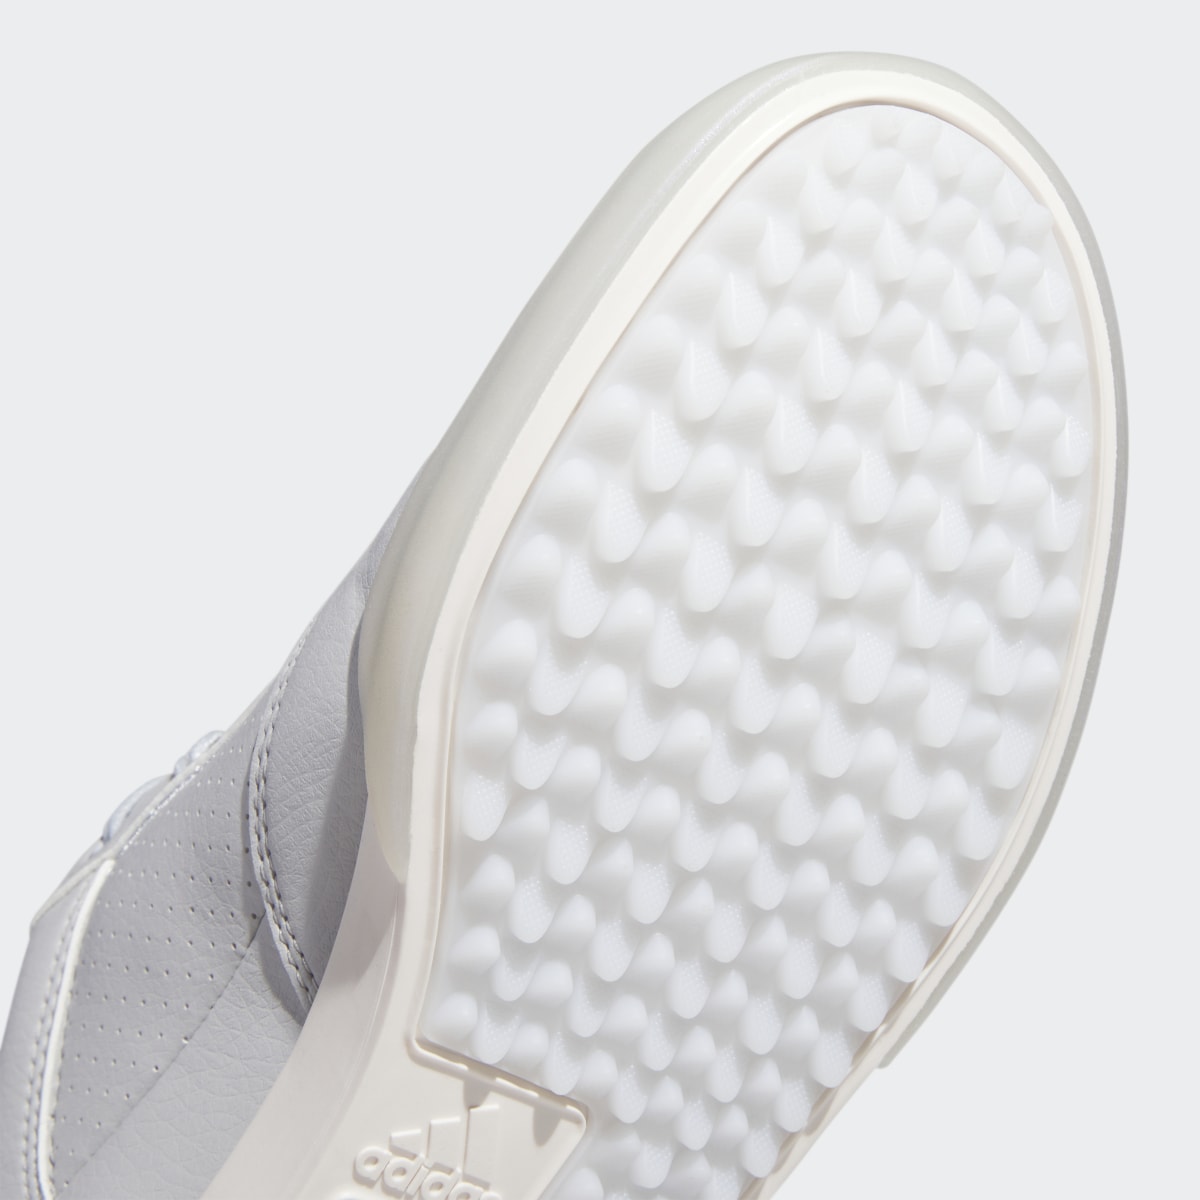 Adidas Retrocross Spikeless Golf Shoes. 10